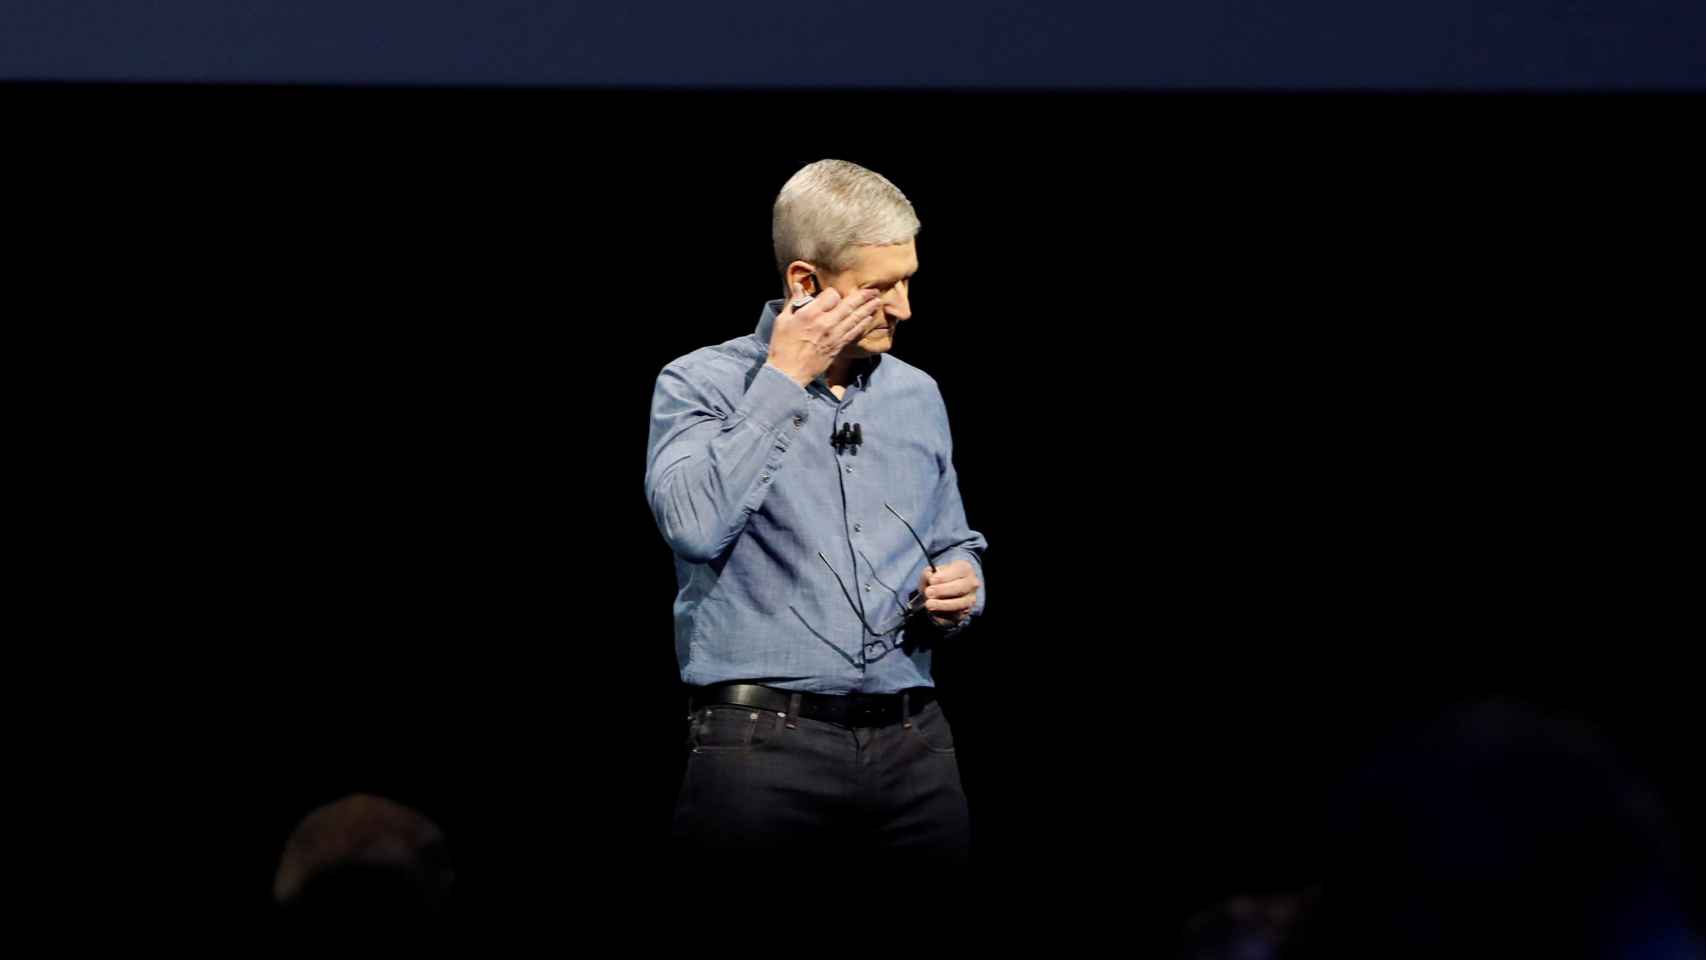 El CEO de Apple, Tim Cook, se seca las lágrimas recordando la masacre de Orlando.